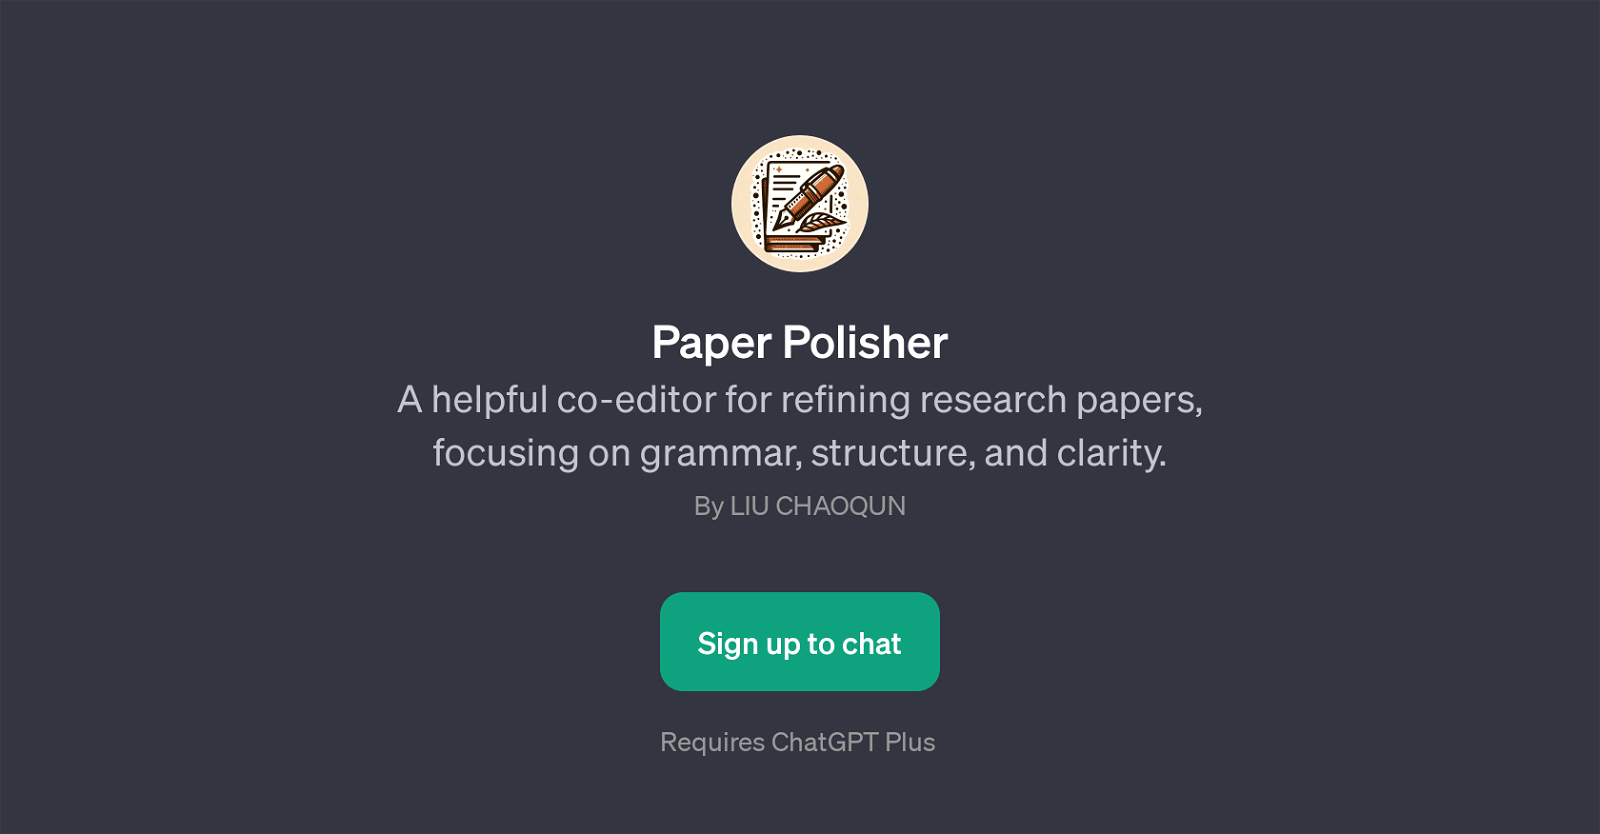 Paper Polisher website